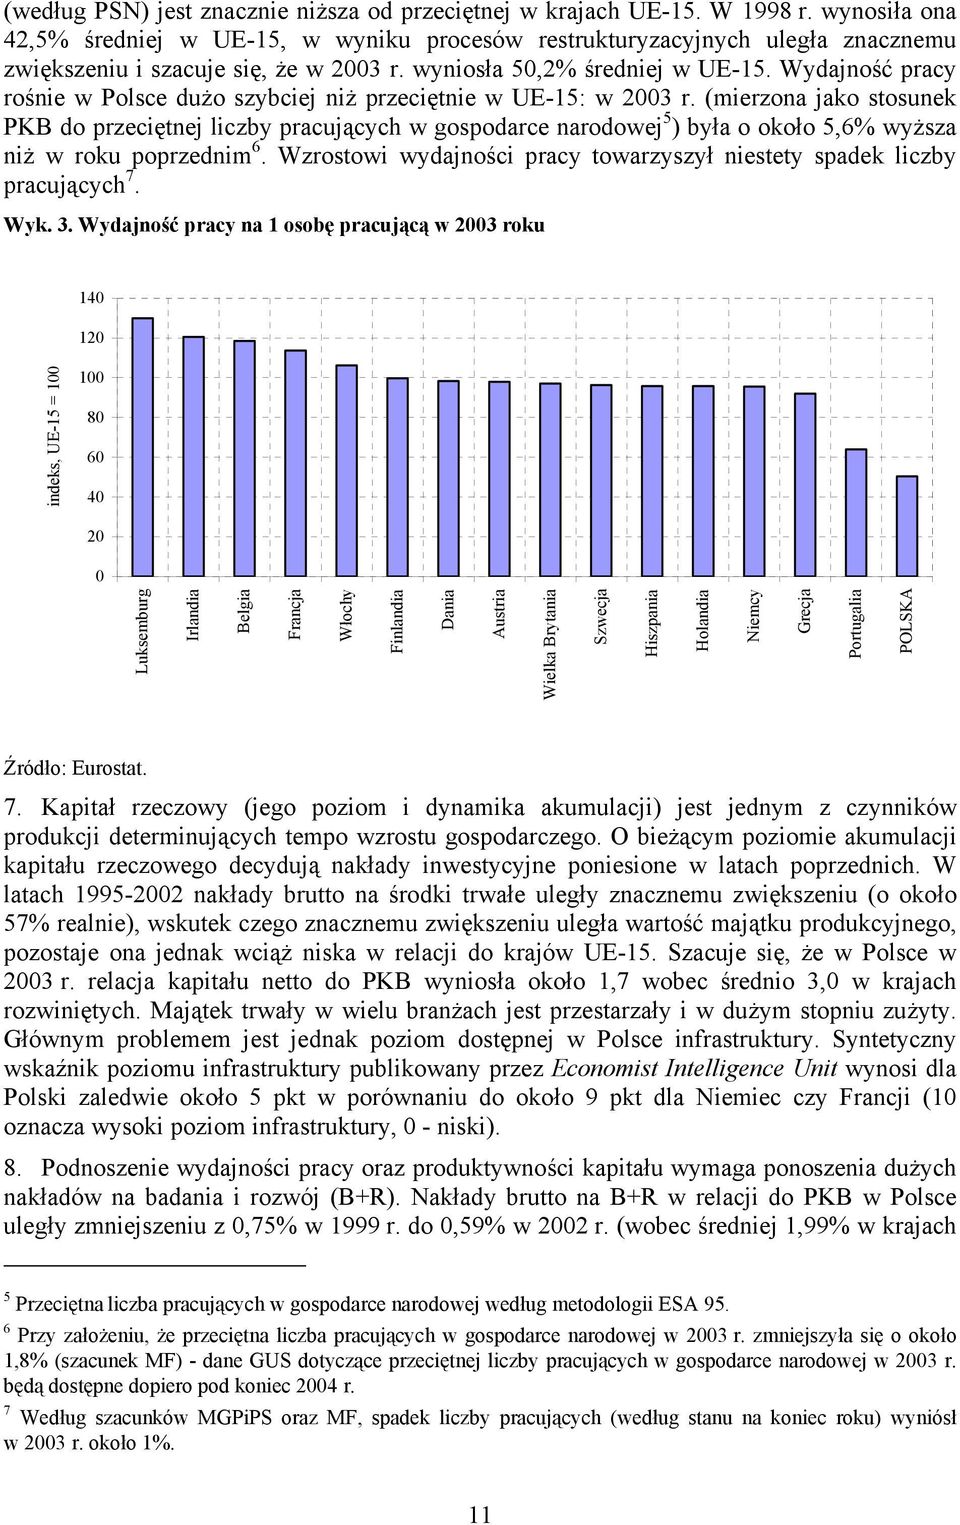 Wydajność pracy rośnie w Polsce dużo szybciej niż przeciętnie w UE-15: w 2003 r.